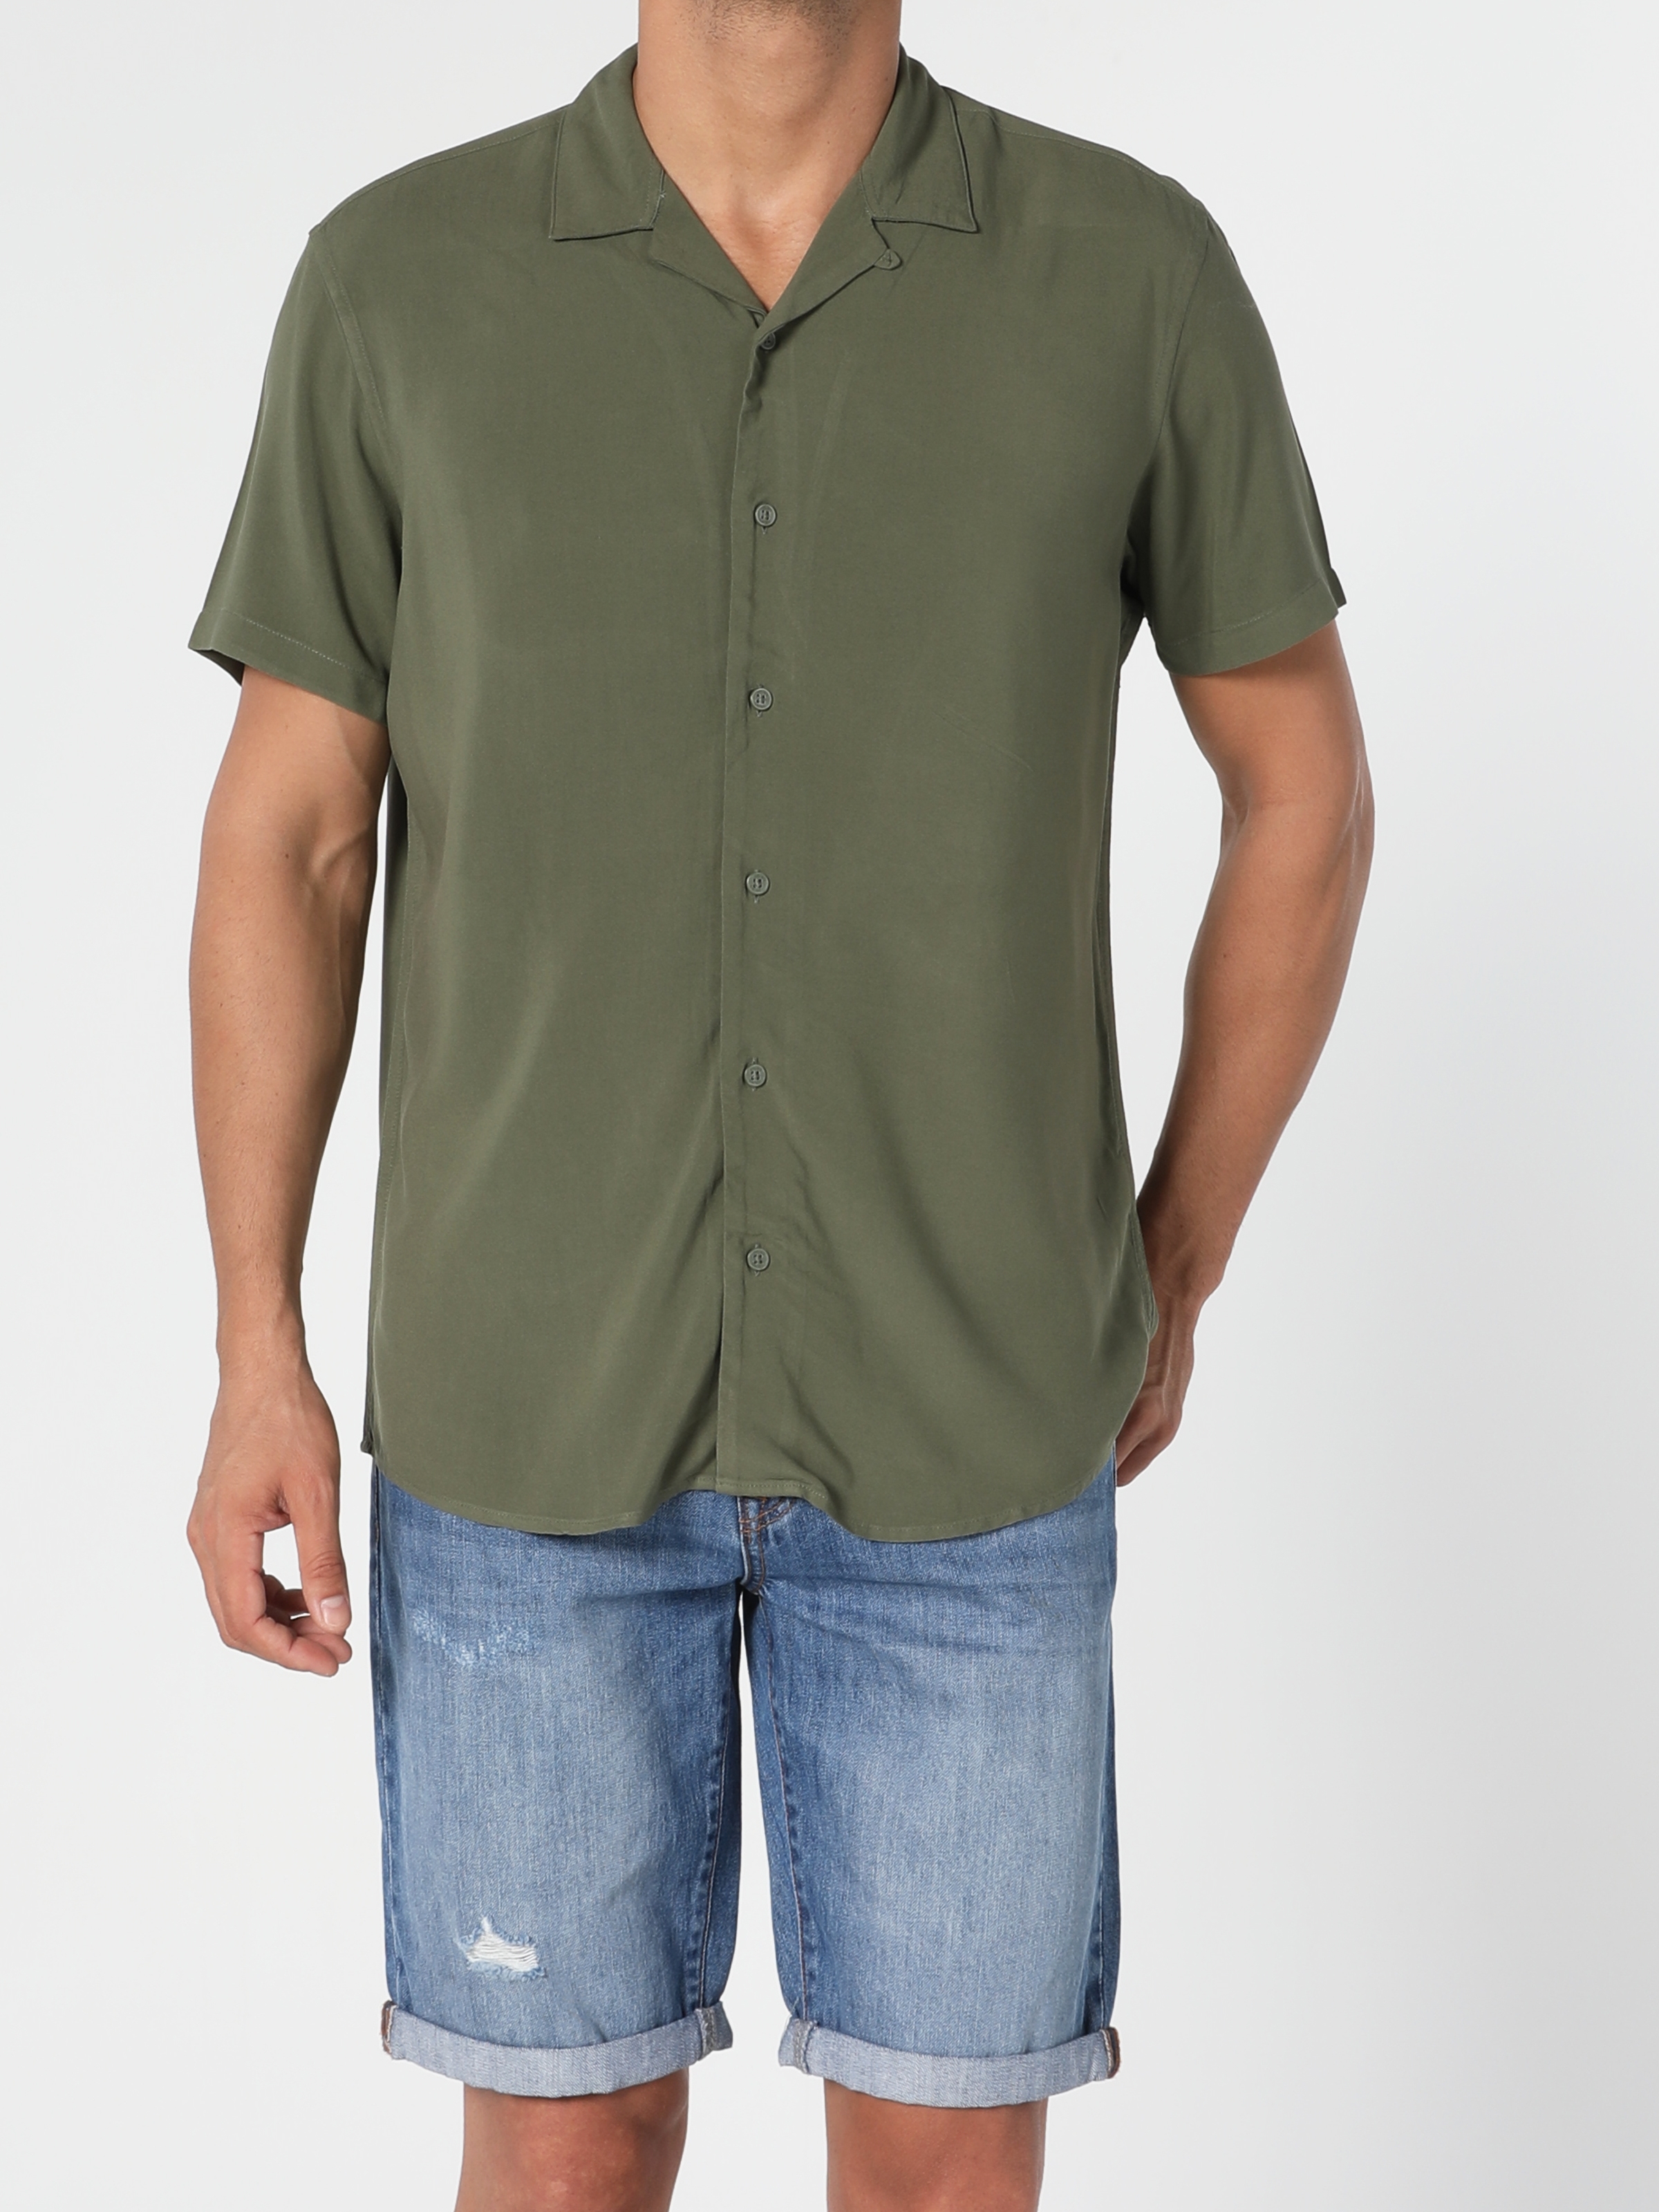 Colins Haki Regular Fit Shirt Neck Erkek Kısa Kol Gömlek. 2